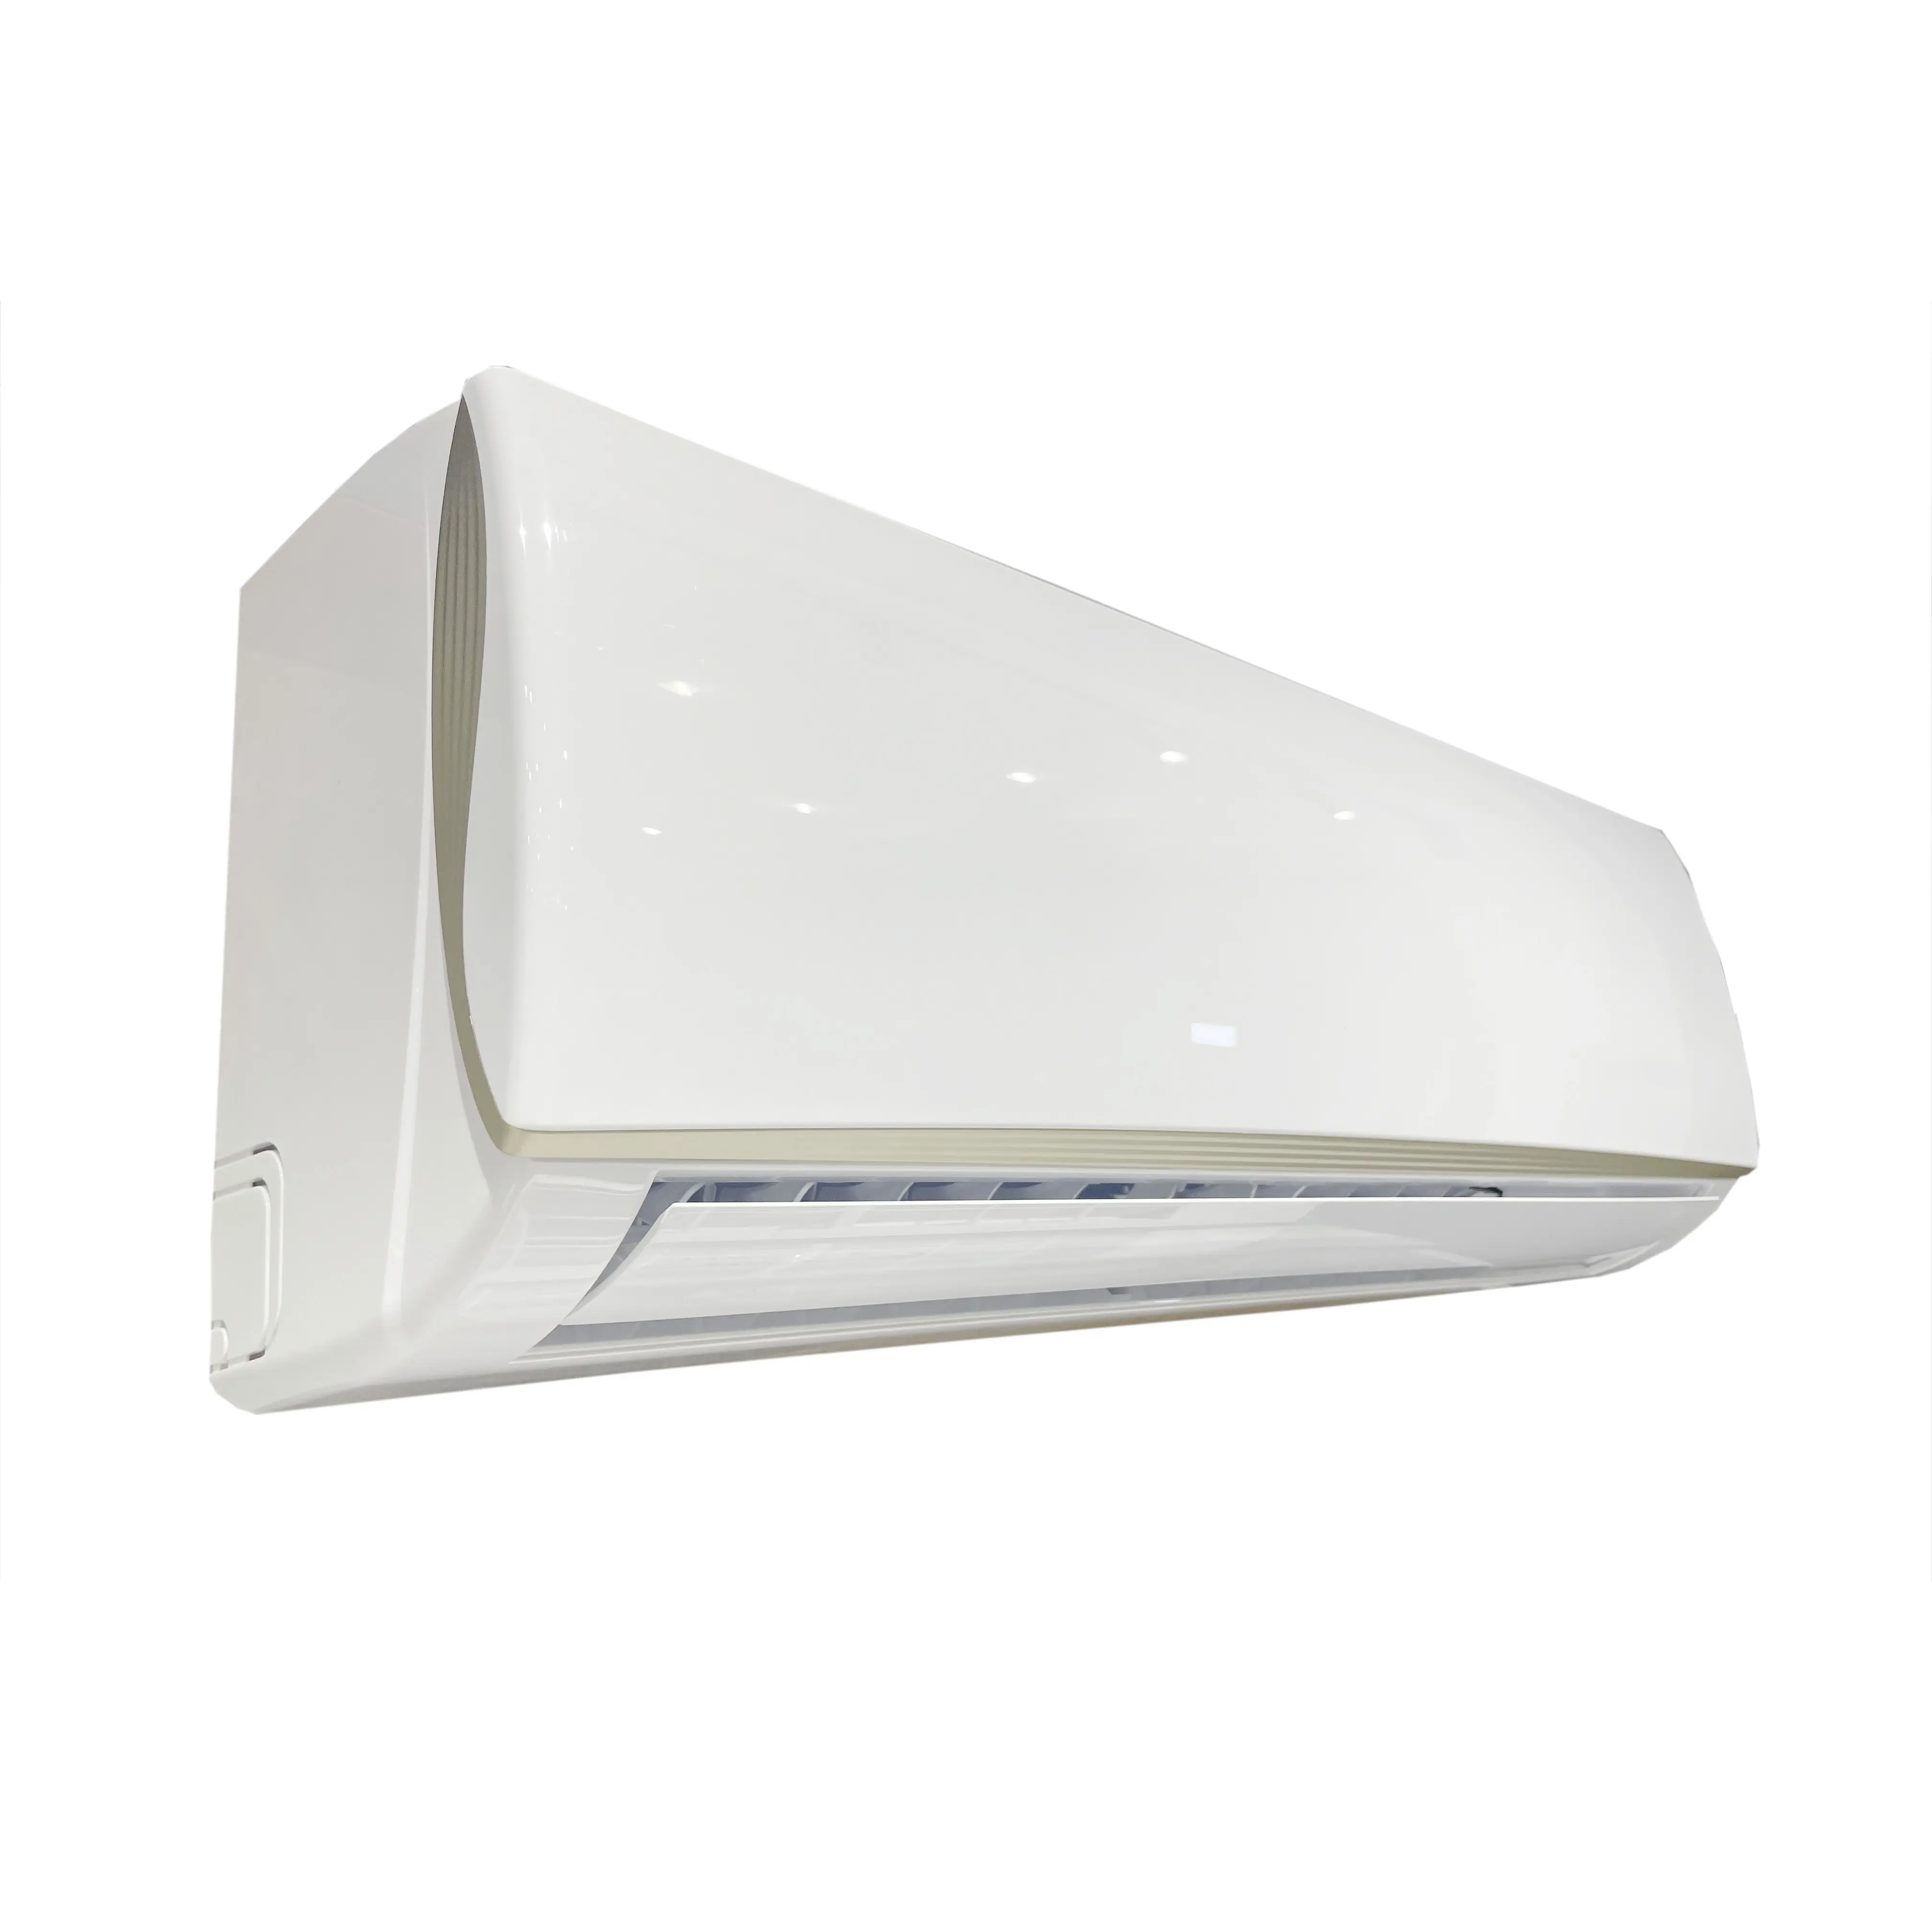 Oem aceita ar condicionado doméstico de classe de energia 24000 btu A de frequência fixa R32 com unidade de refrigeração inteligente